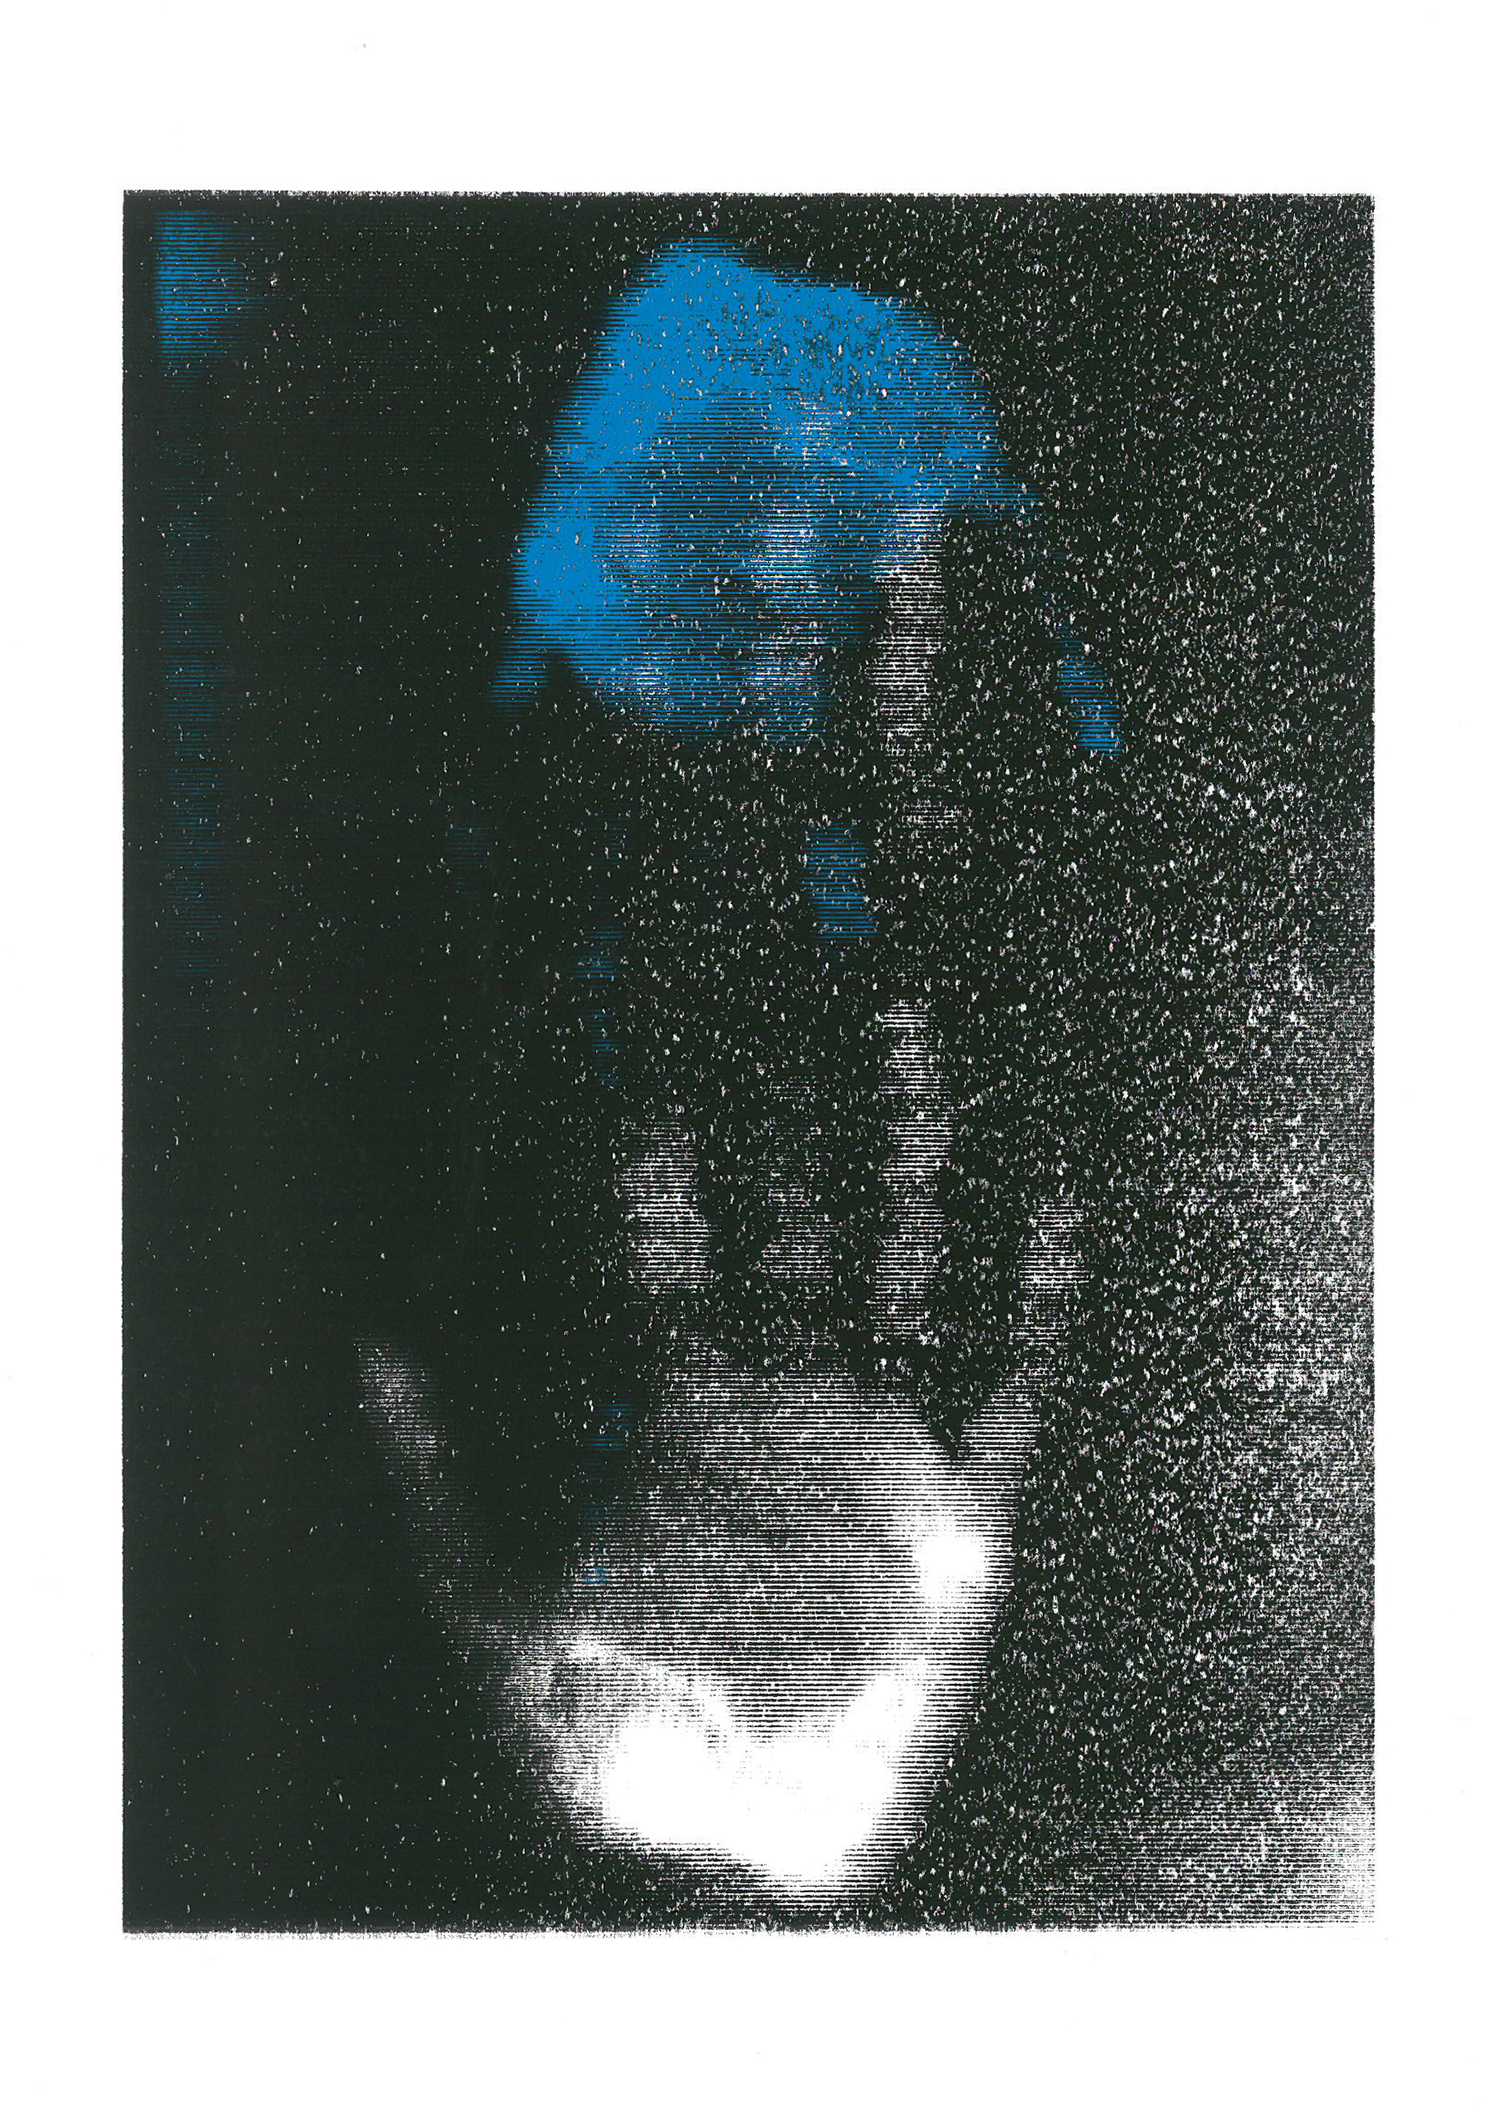 Grafika przedstawia dłoń wyłaniającą się z ciemnego tła oraz w górnej części niebieska apla